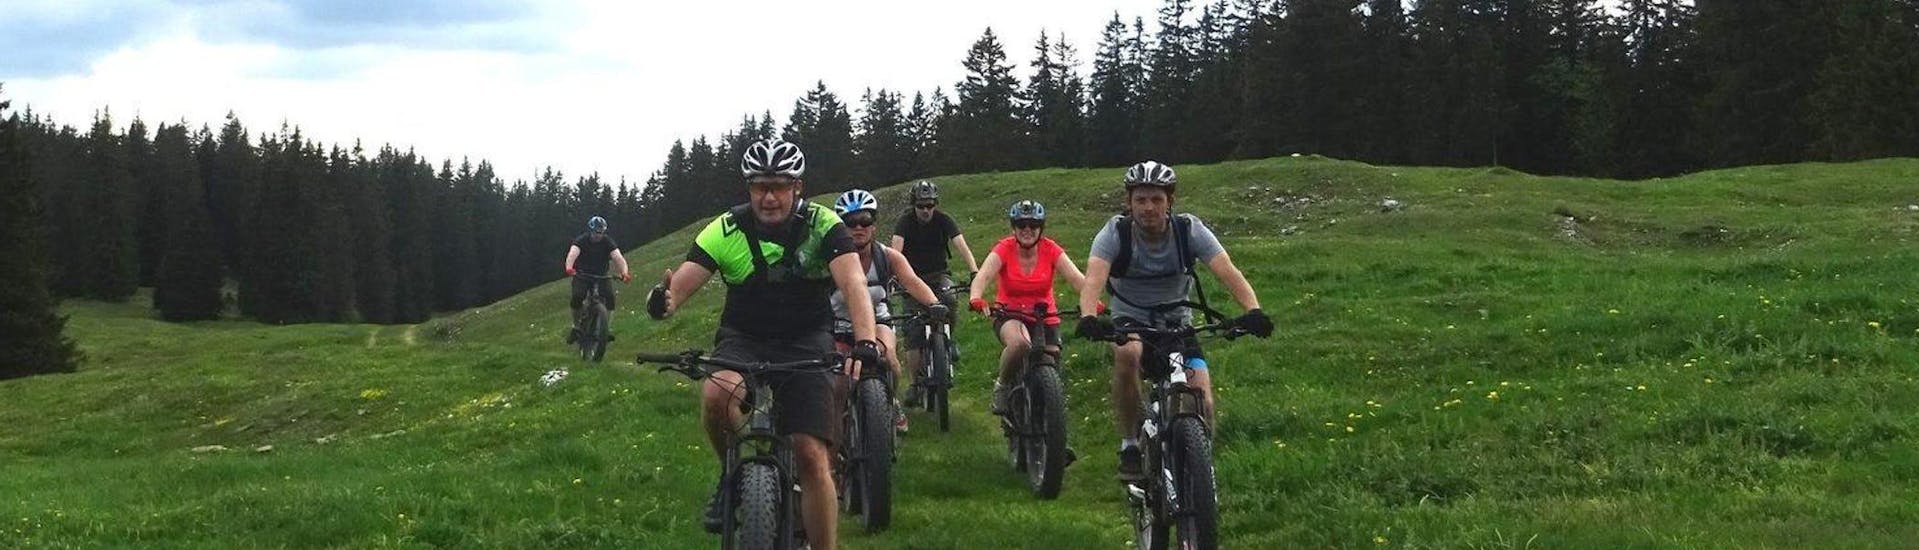 A family is doing the Mountain Bike Tour "Jura Ridges" - All Levels activity with La Boîte à montagne.